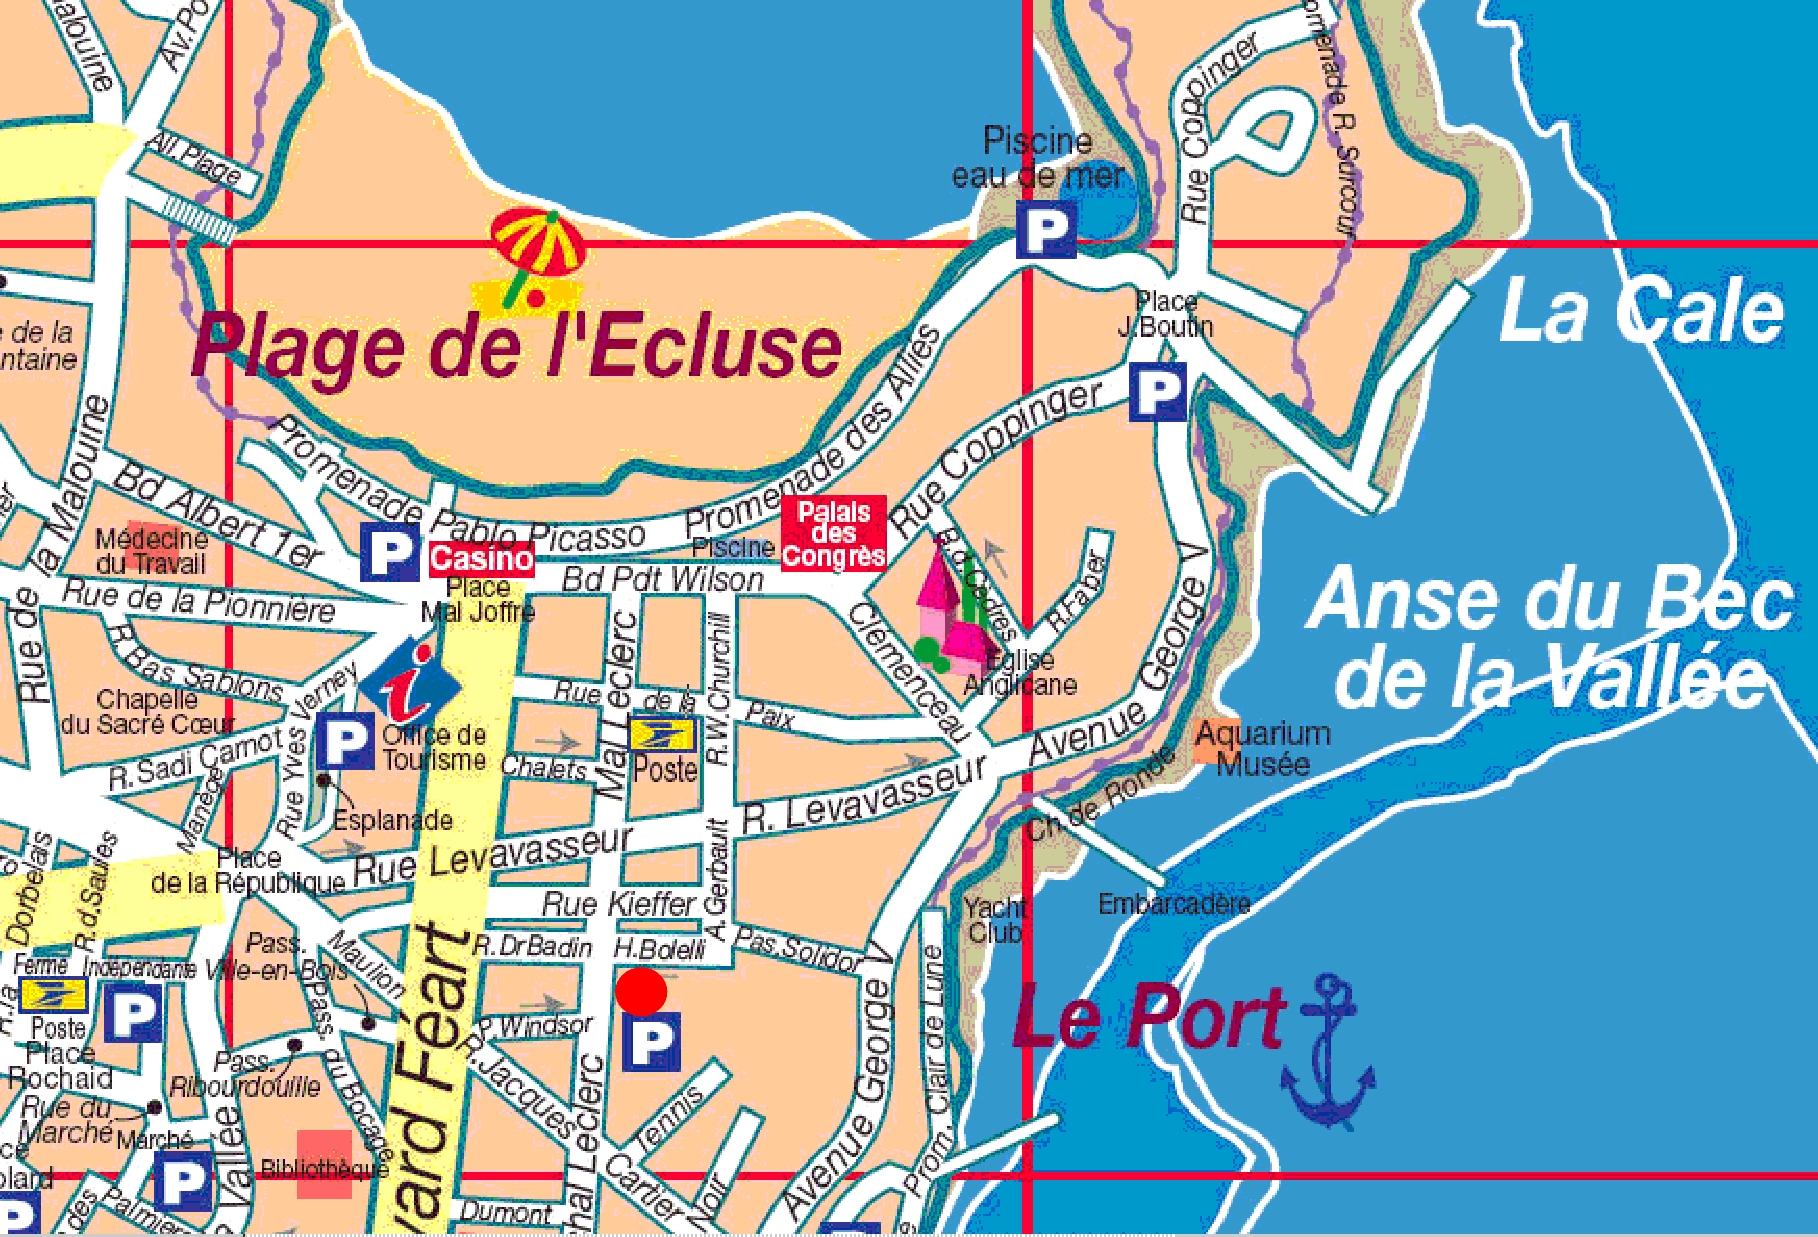 Plan location studio etudiant sur Dinard : Lyce hotelier ou CREPS